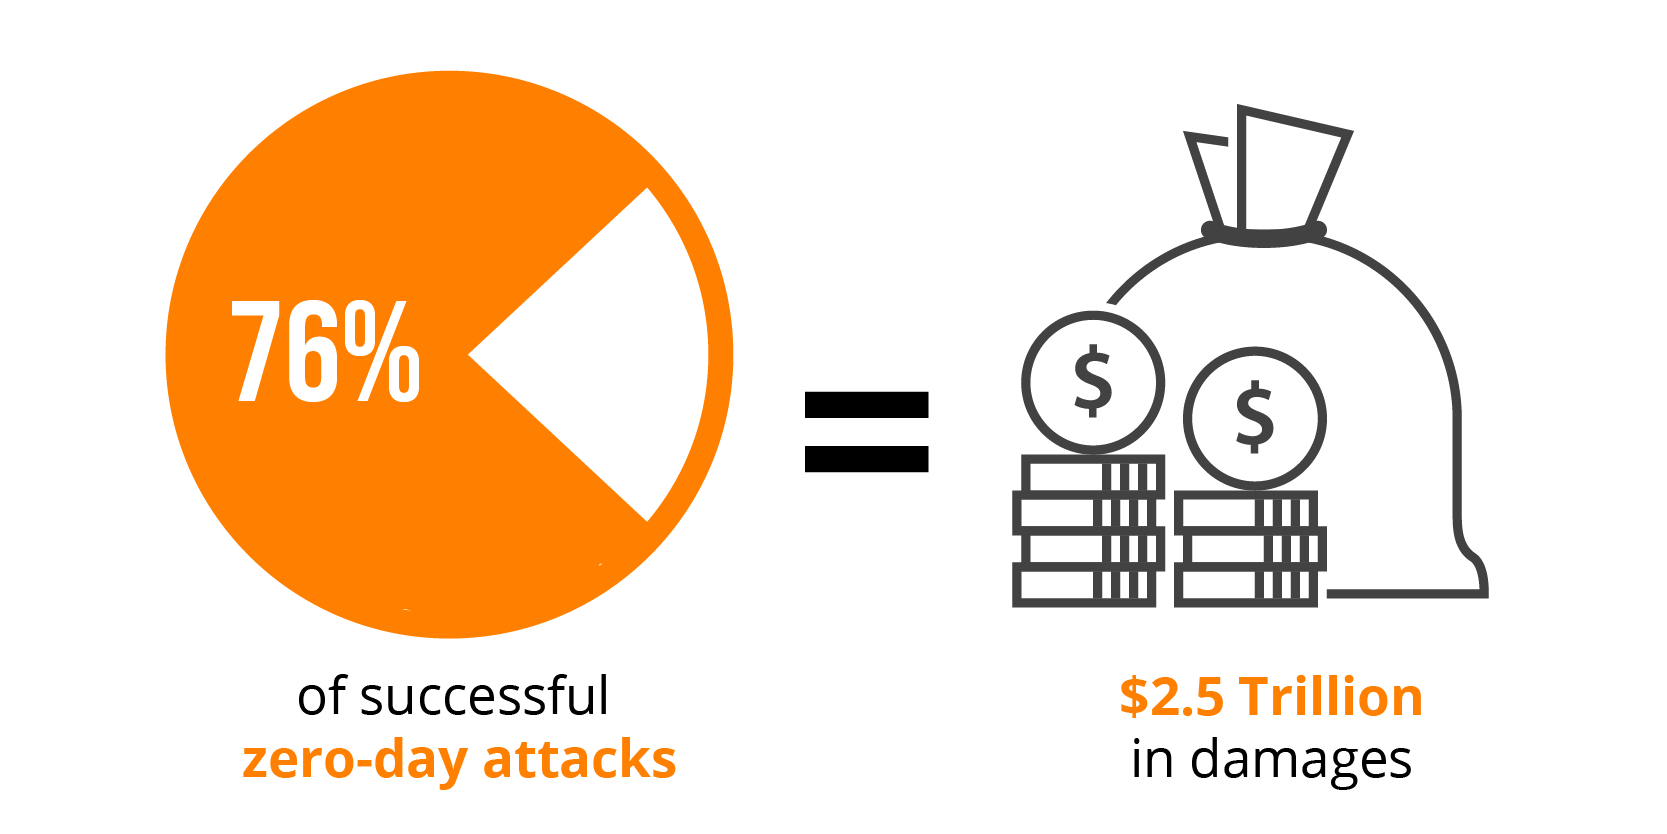 76% of successful attacks on organizations were zero-day attacks